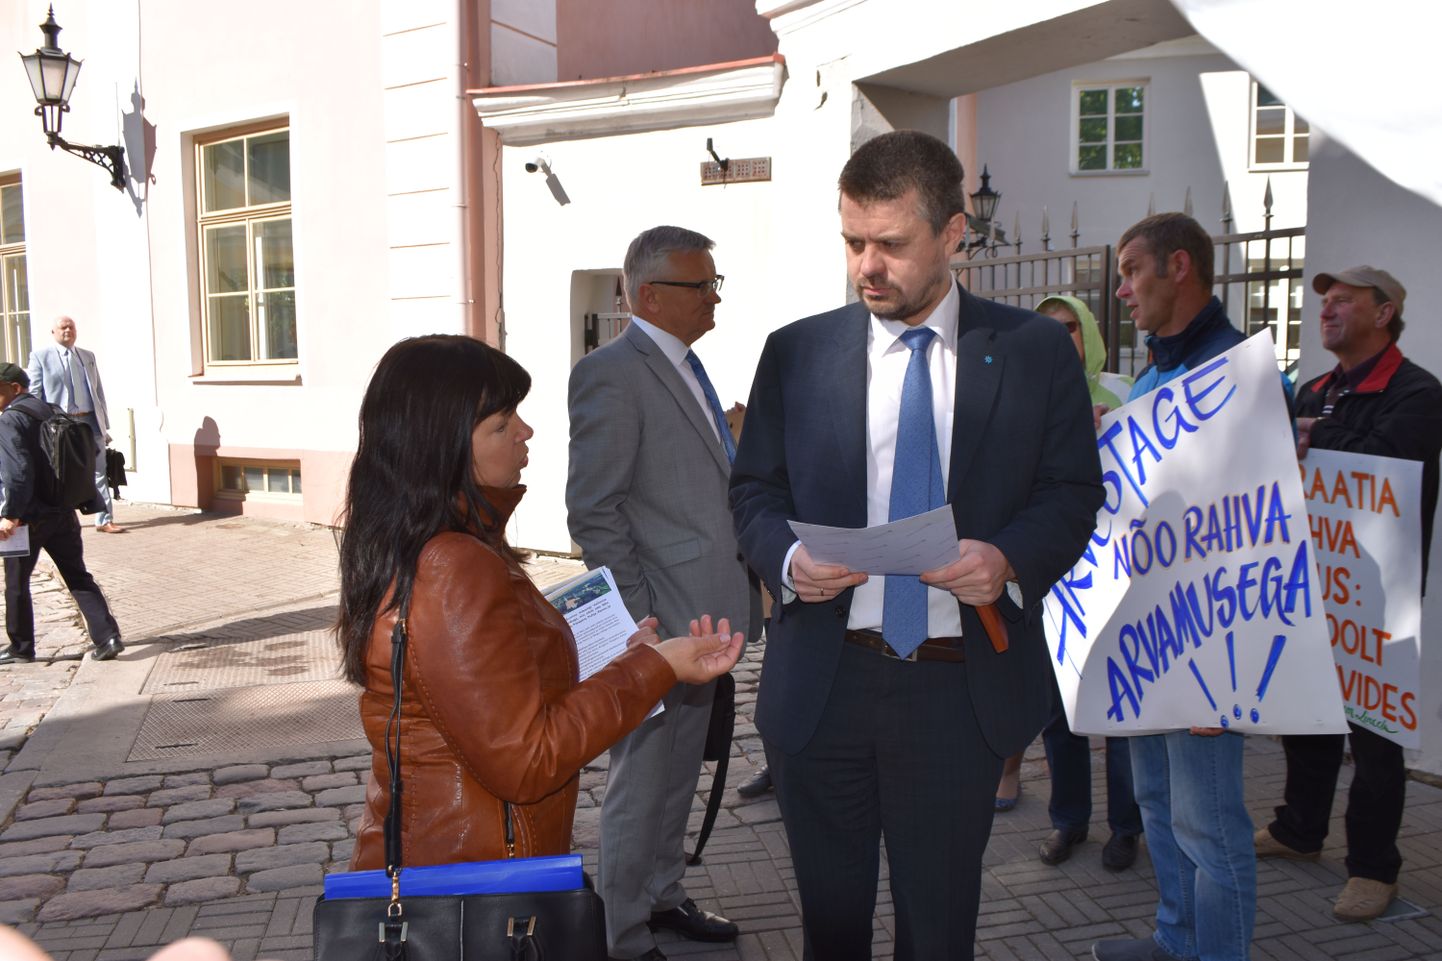 Juuni alguses käis rahvaalgatusliku liikumise «Vali Nõo» eestvedajad Stenbocki maja juures meelt avaldamas. Nõokas Krista Kvarnström (vasakul) vestlemas justiitsministri Urmas Reinsaluga.